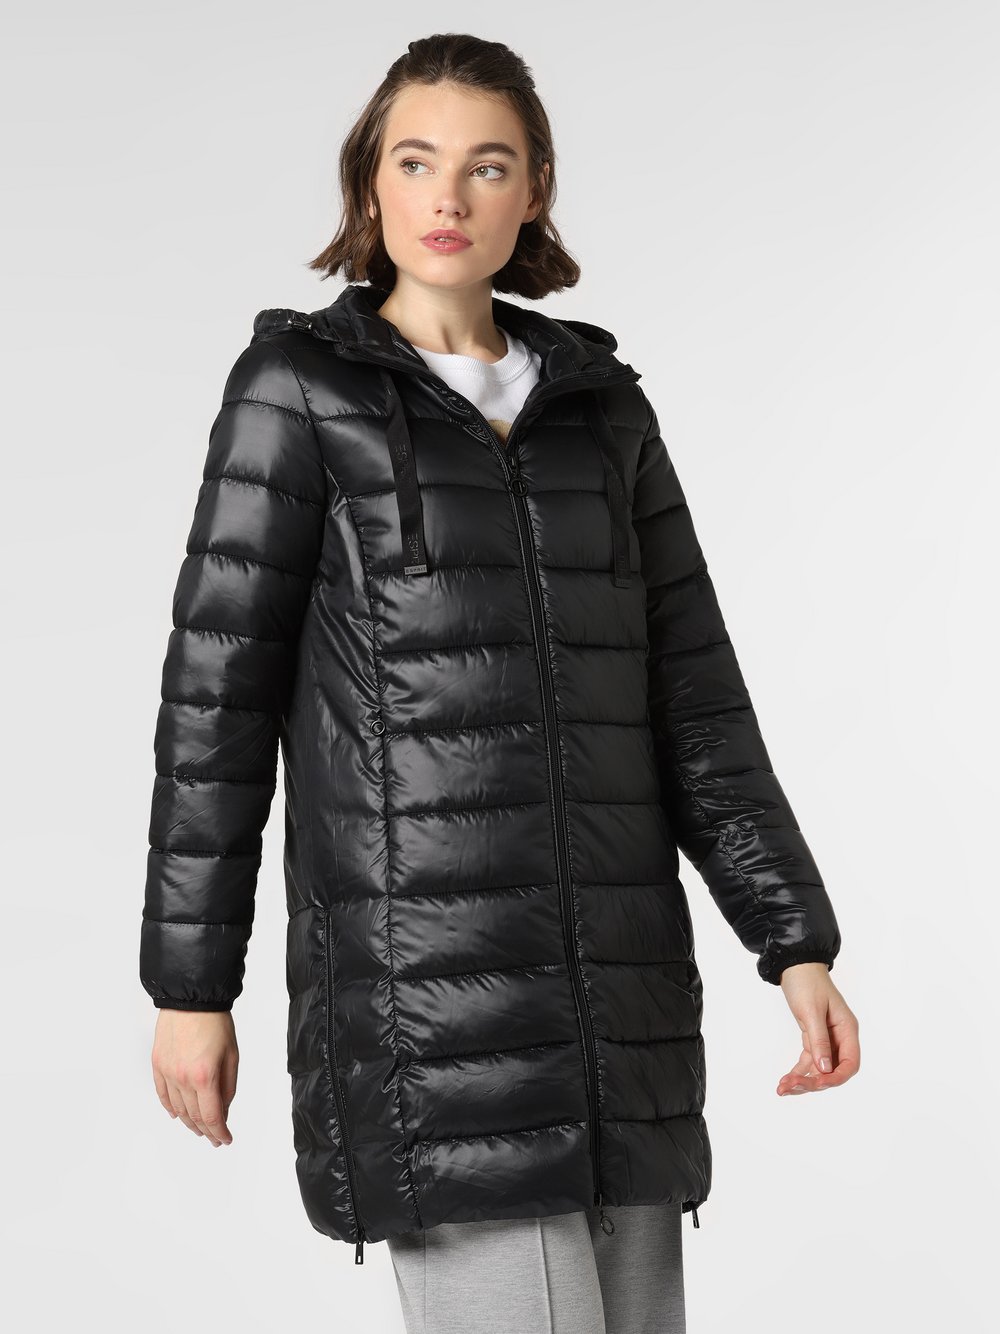 Esprit Casual - Damski płaszcz pikowany, czarny